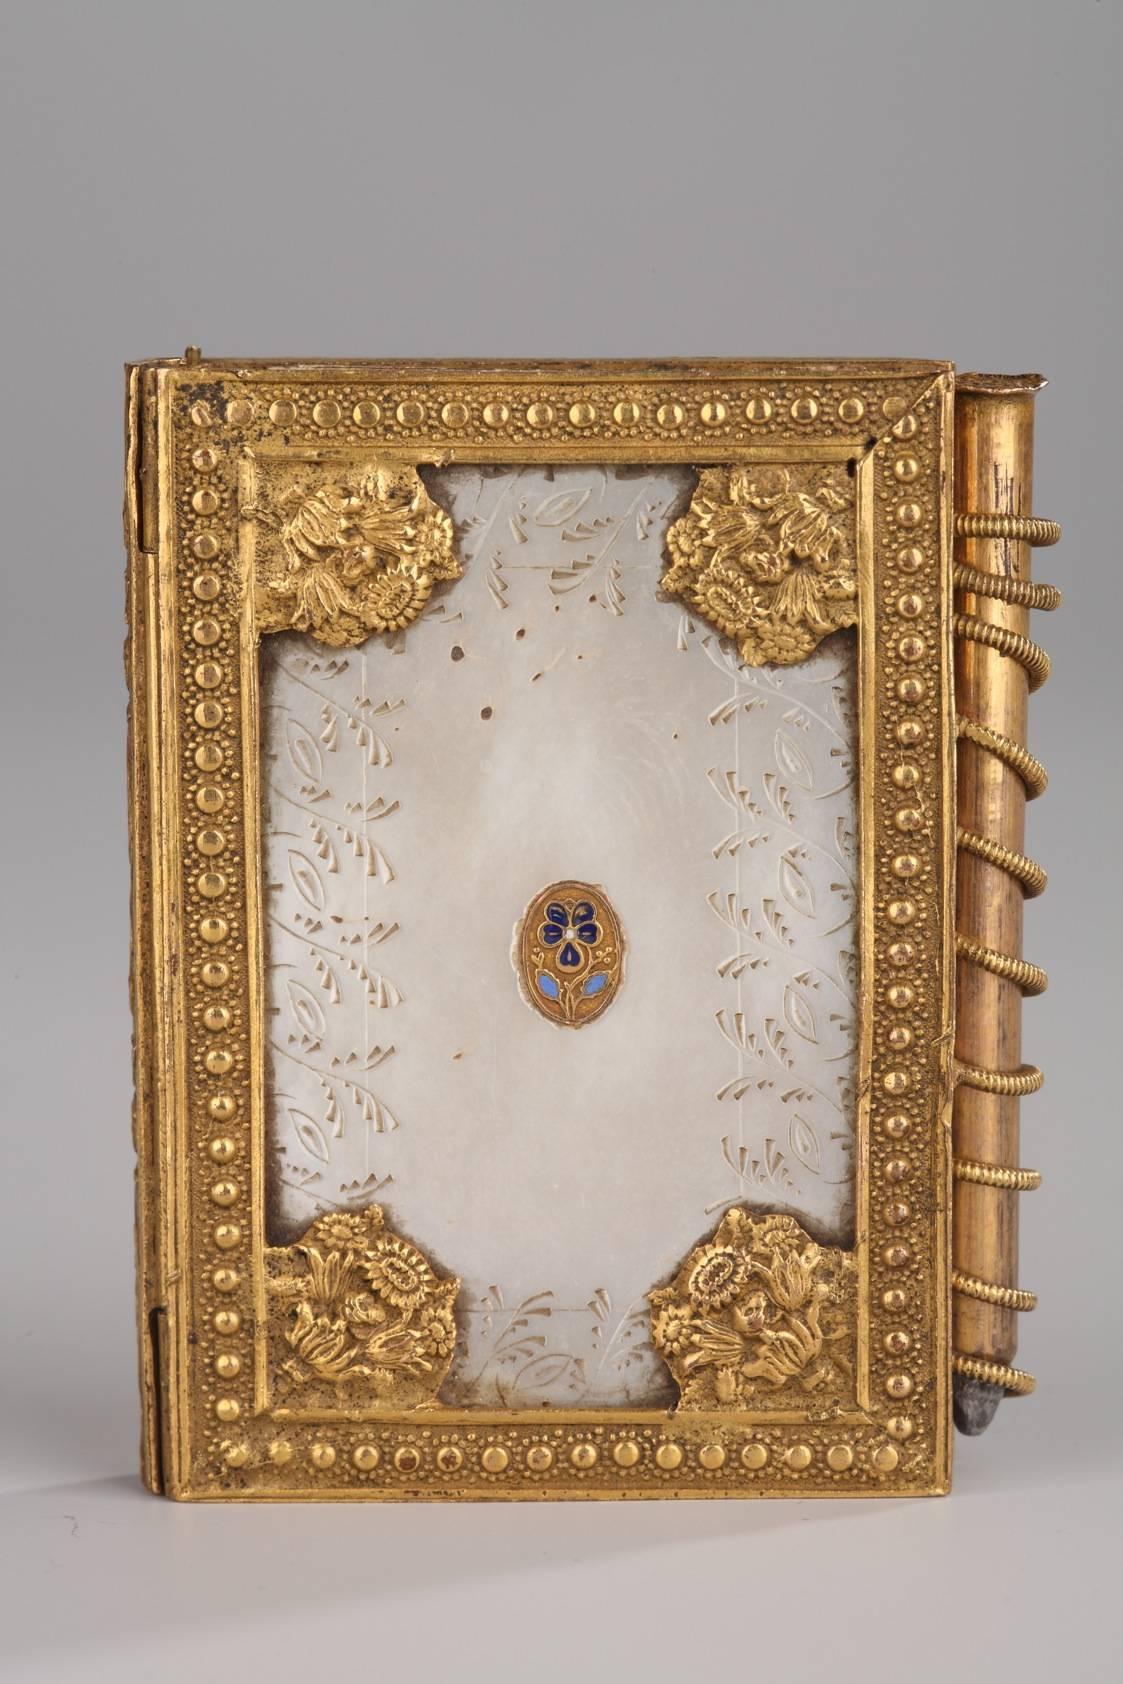 Tanzkarte Charles X aus Perlmutt mit vergoldeten Bronzebeschlägen. Es ist mit Pflanzen, blumigen Verflechtungen und Blumensträußen graviert. Ein emailliertes Stiefmütterchen ziert den Deckel, ein typisches Motiv der Palais-Royal-Objekte. Es hat das